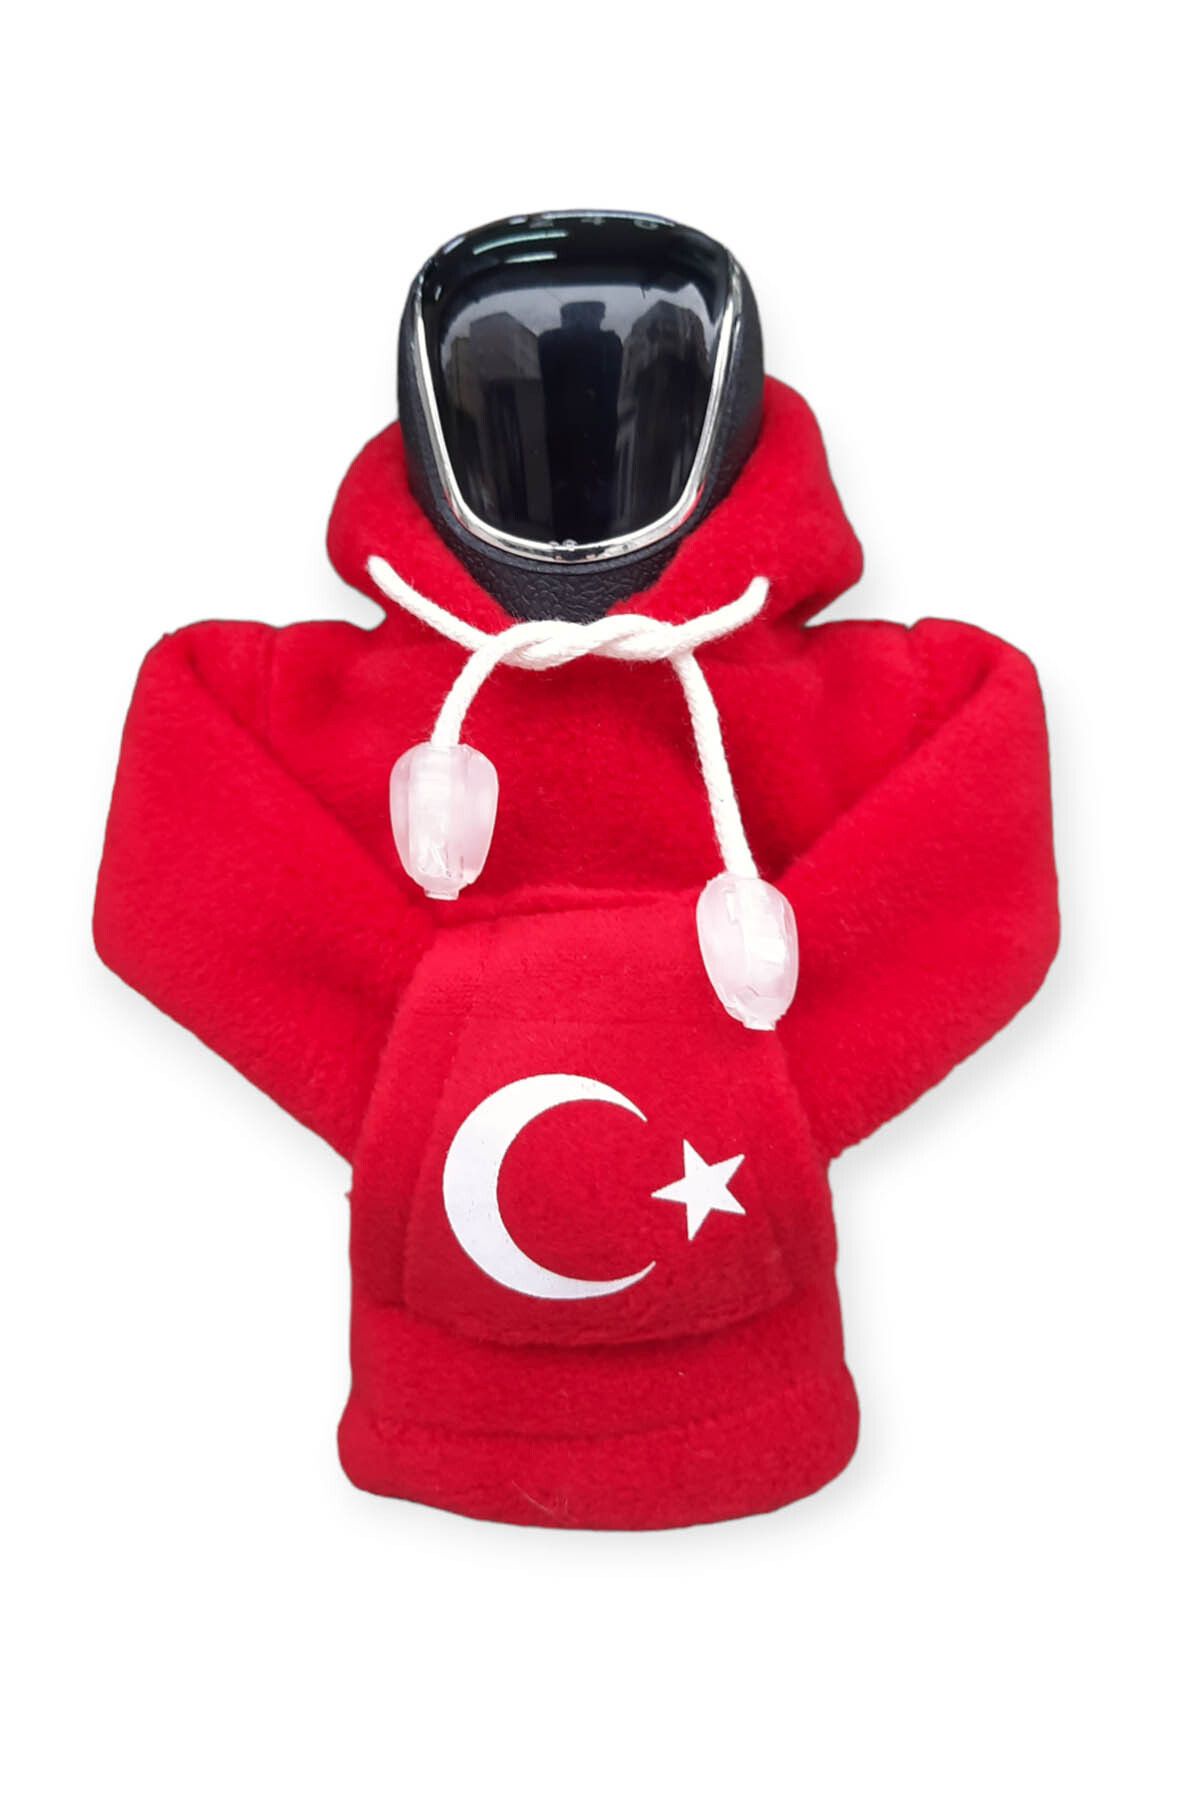 KYLE XM Ay Yıldız Türk Bayragı Polar Vites Kıyafeti Araç Aksesuarı Hoodie Kapşonlu Vites Poları  Sweatshirt